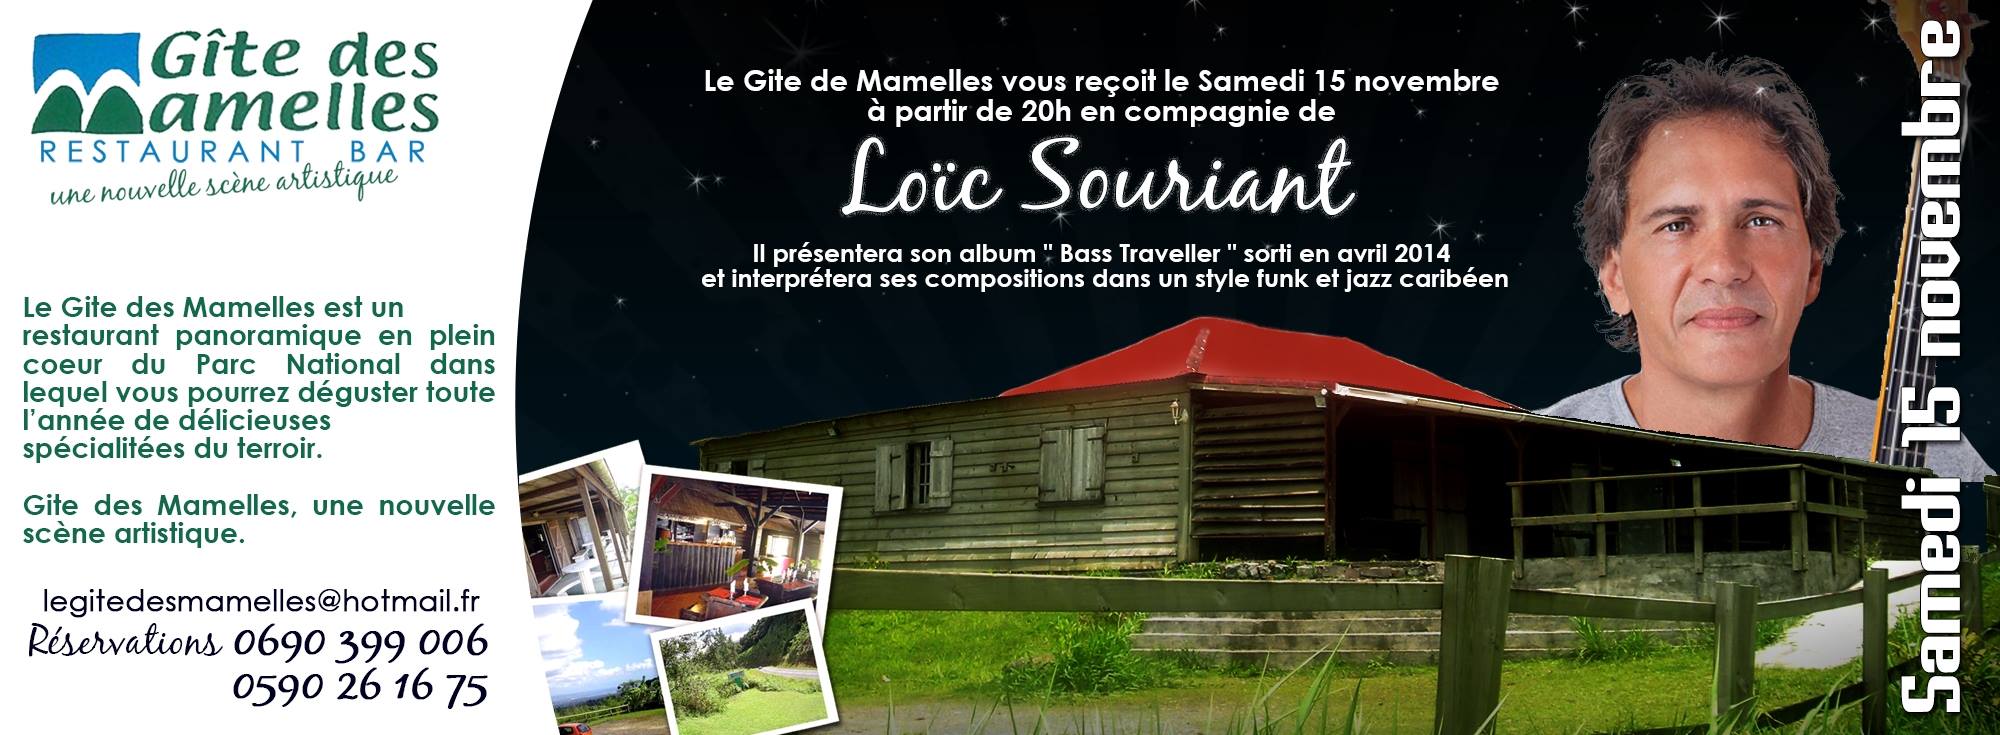 Loïc Souriant, concert au Gite des Mamelles